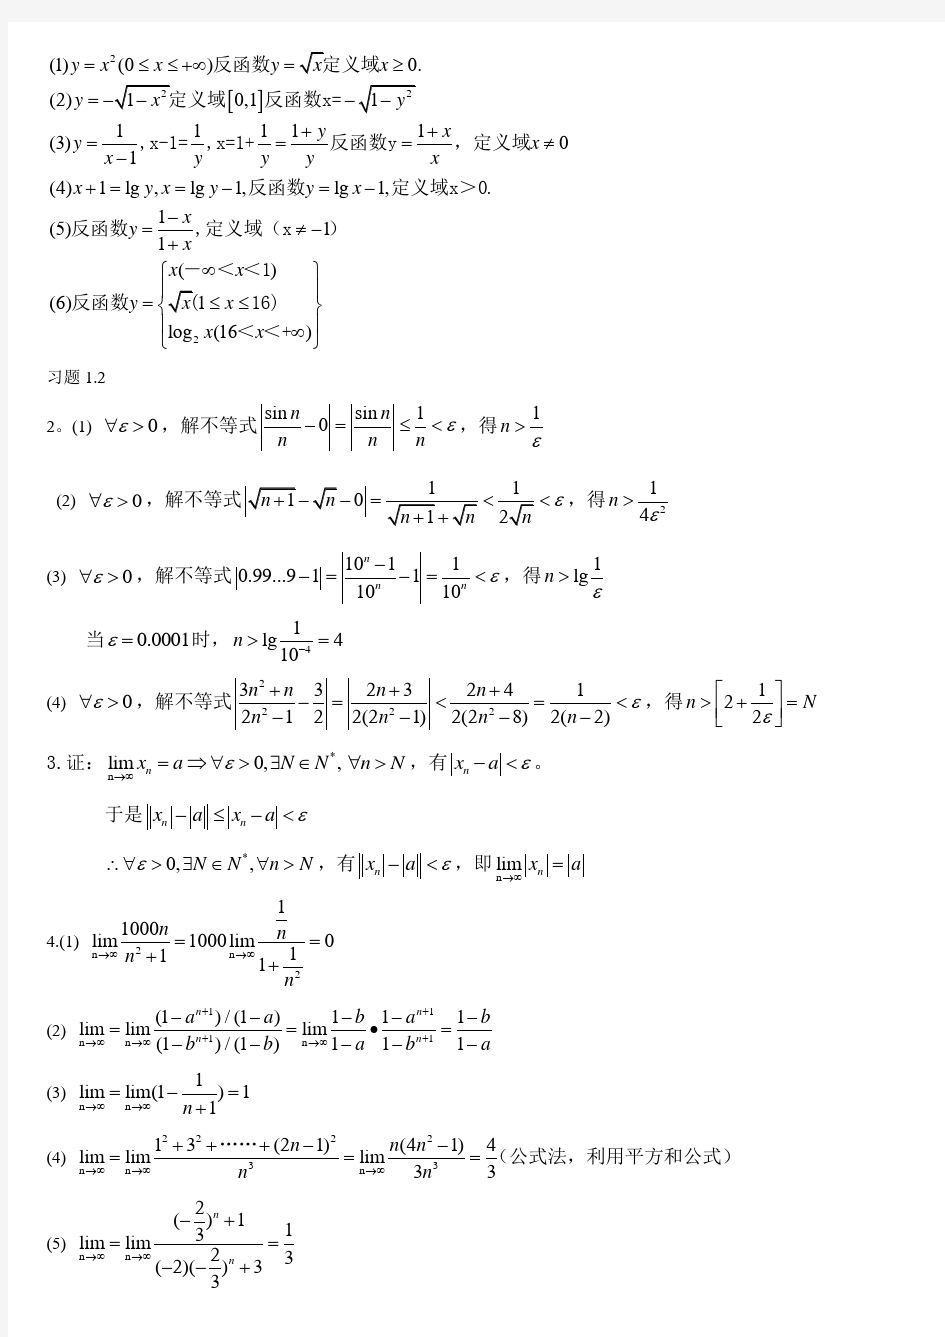 川大版高等数学(第一册)部分课后题答案[1] - 副本